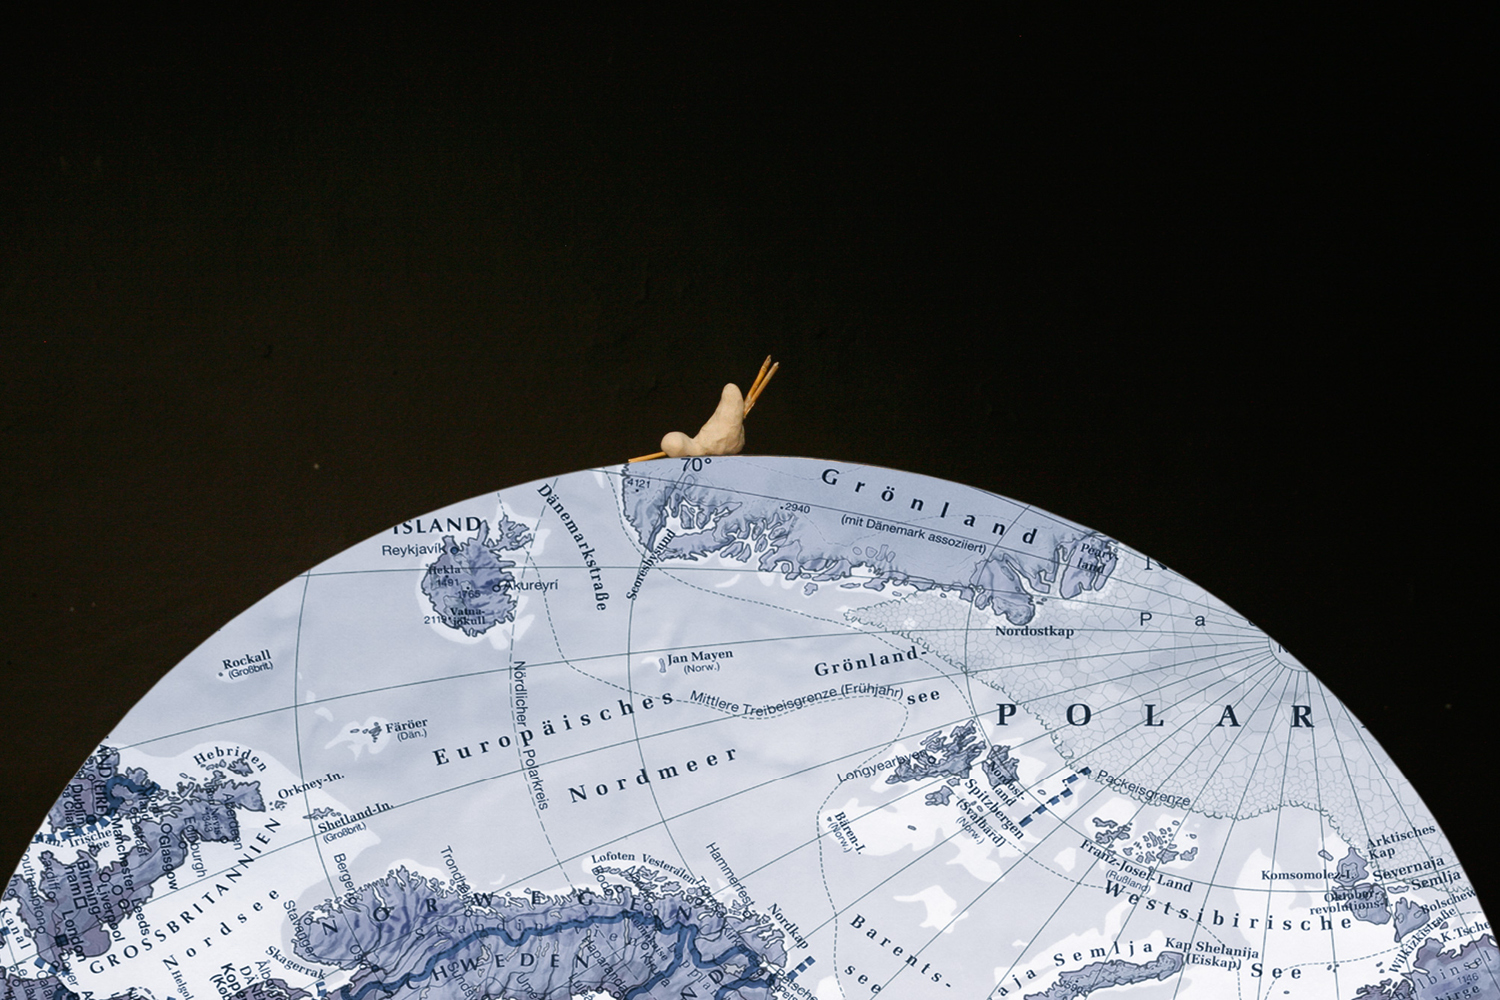 Im unteren Bildteil ist eine zur Hälfte angeschnittene Weltkugel aus Atlaspapier. Oben liegt mittig eine kleine, nicht genau erkennbare Figur, die vielleicht aus Ton ist. Der Rest des Bildes ist schwarz.